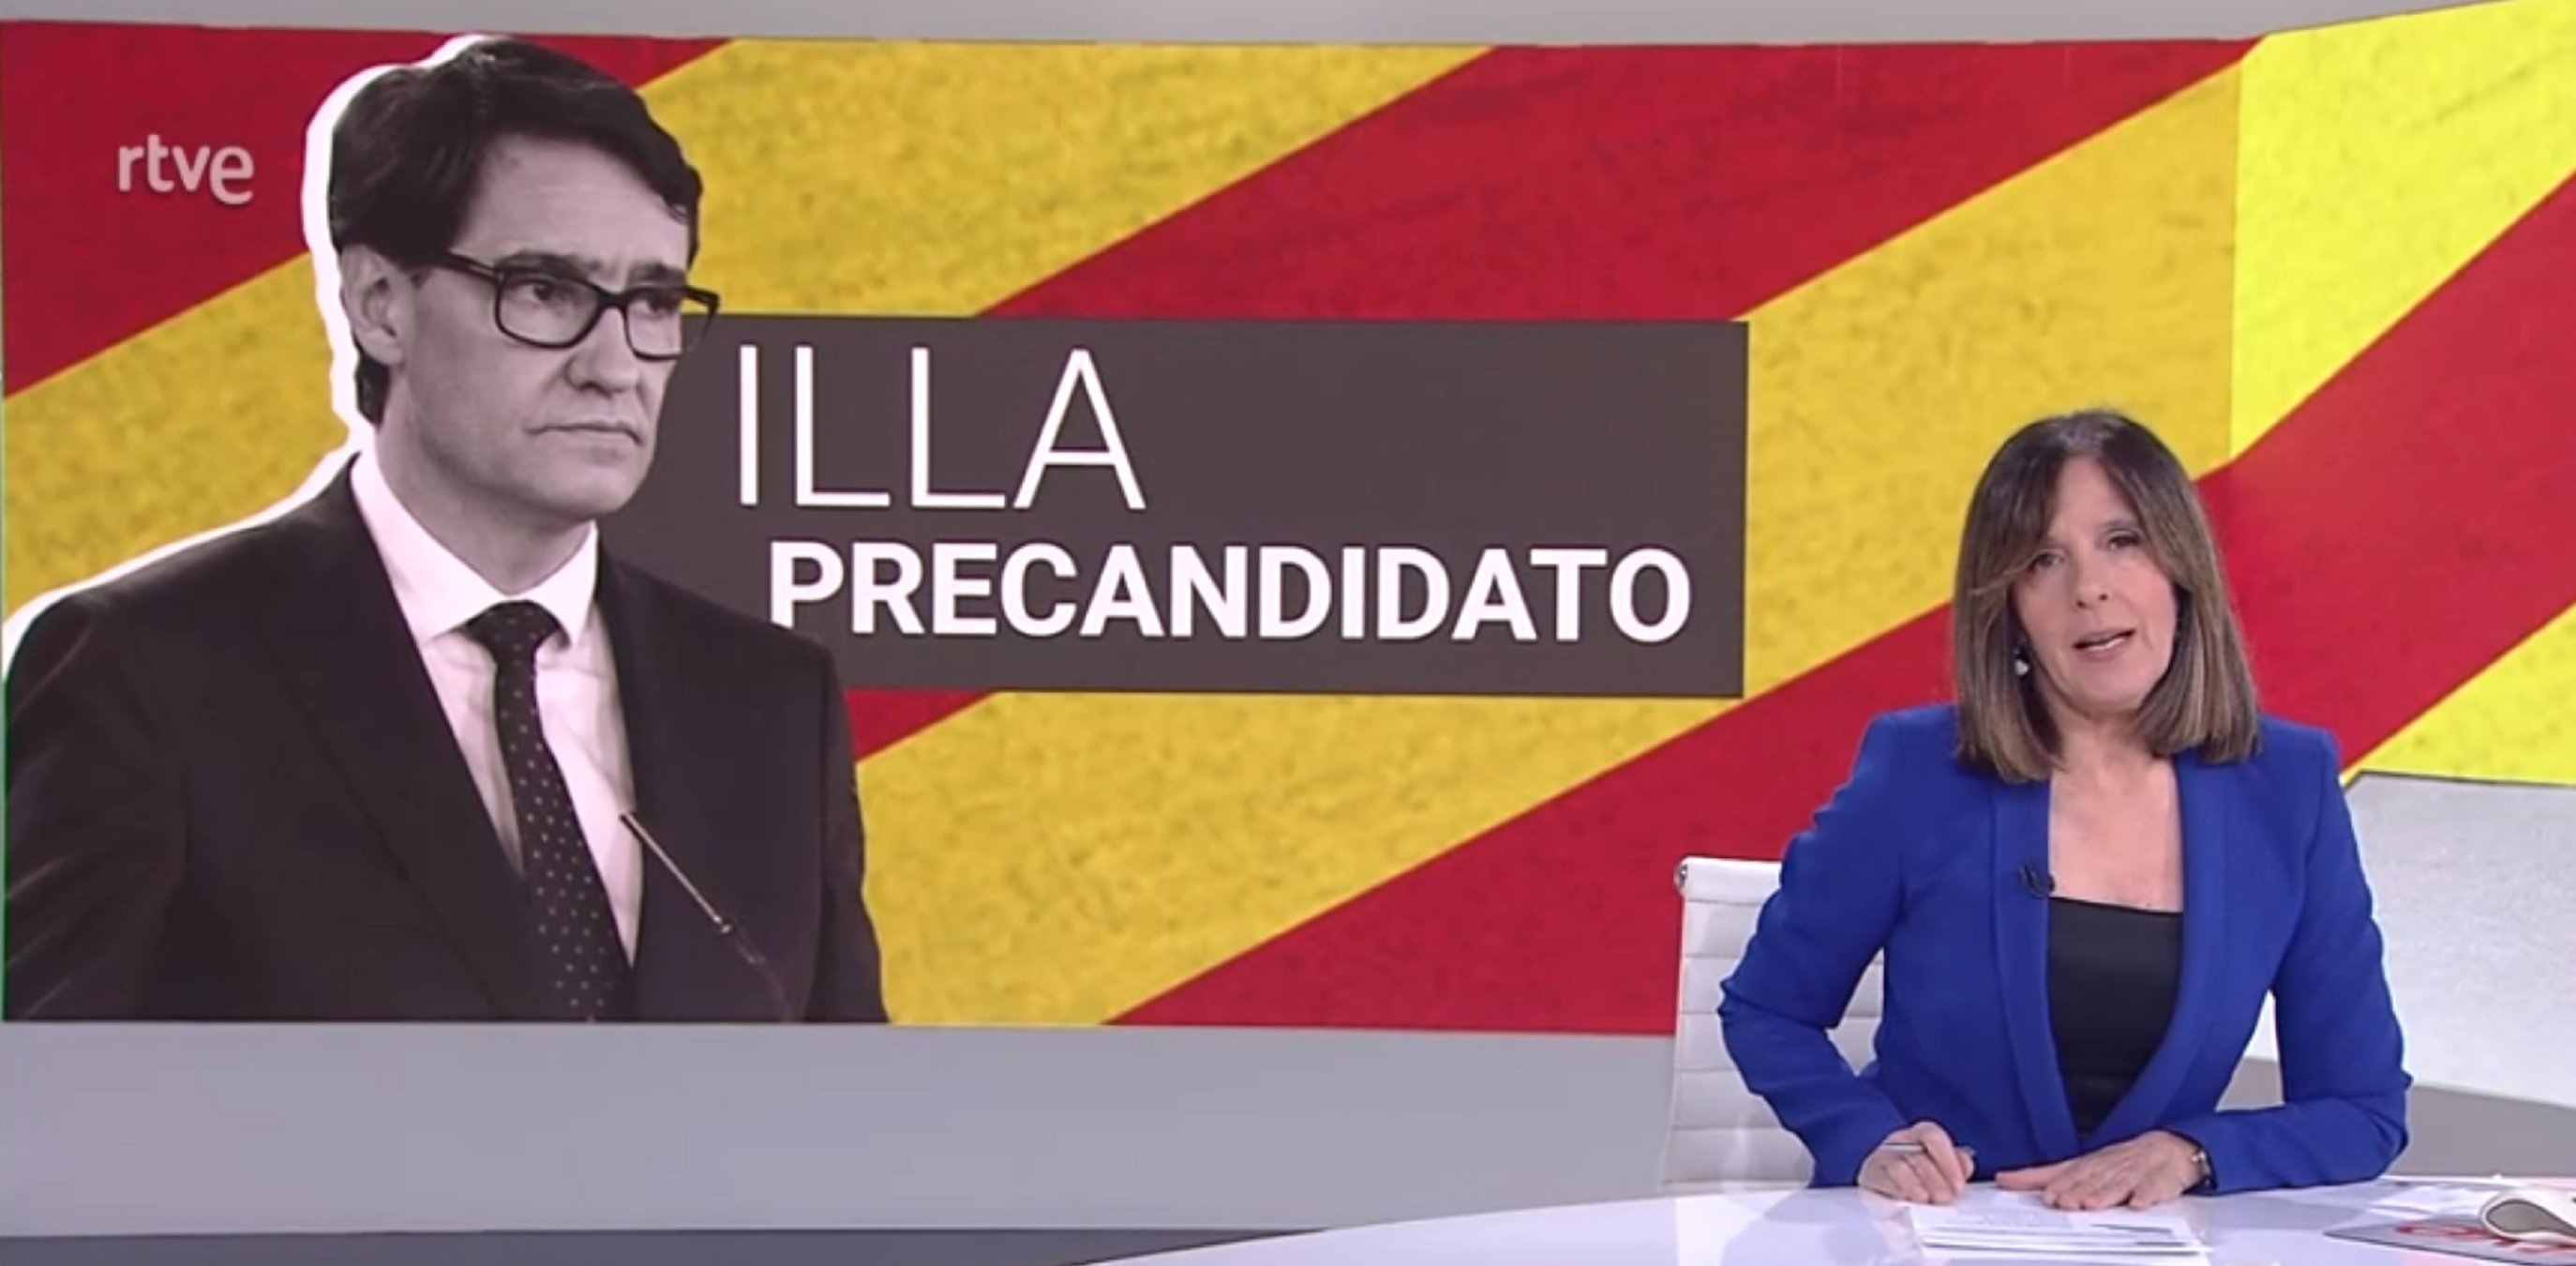 TVE associa vacunes i "vota PSC" en un vídeo vergonyós. Cañas exlota "¡Es TV3!"